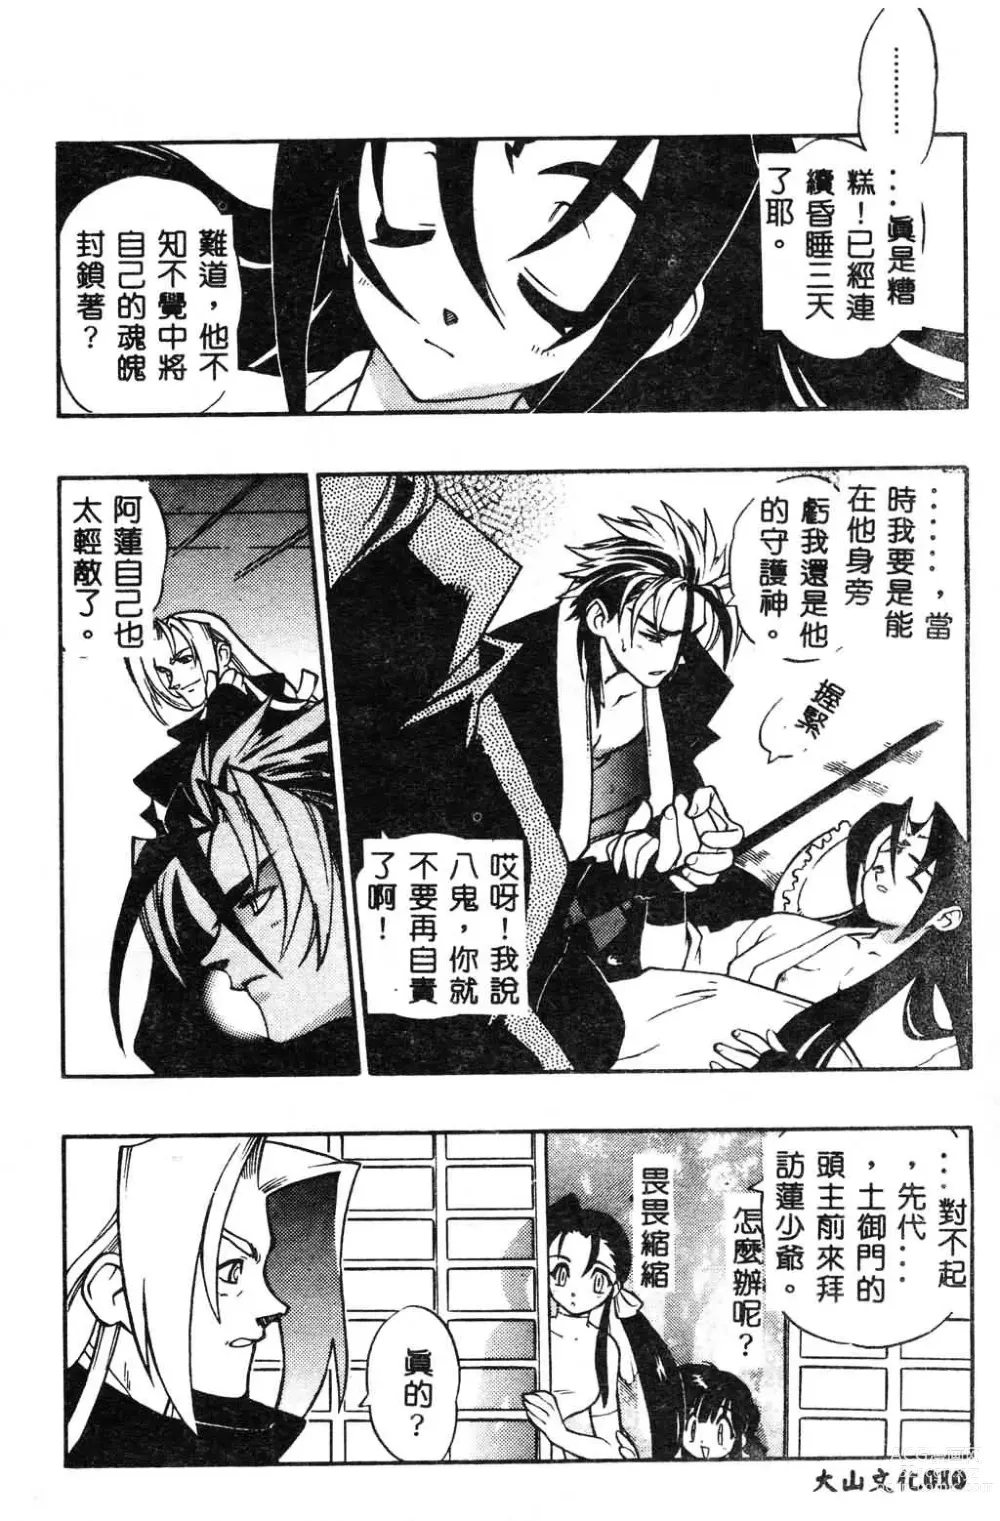 Page 11 of manga Fuusatsu Hyakke